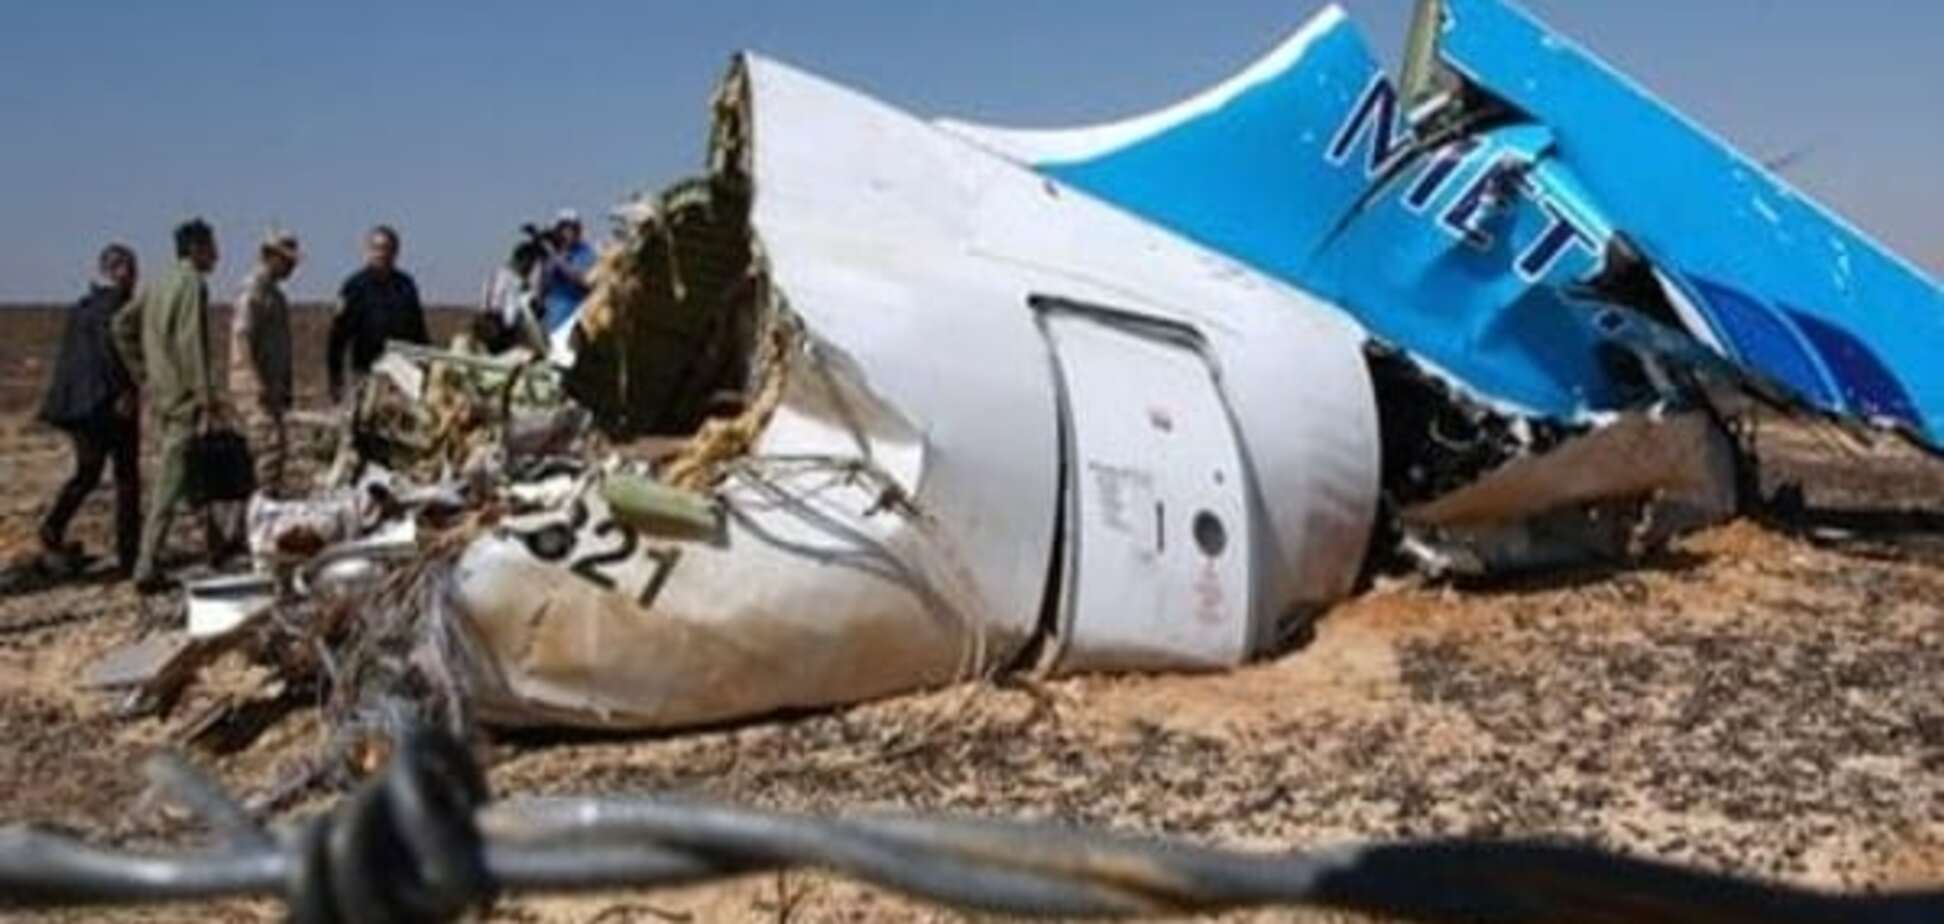 ЗМІ: Експерти встановили місце закладення бомби у збитому над Сінаєм літаку